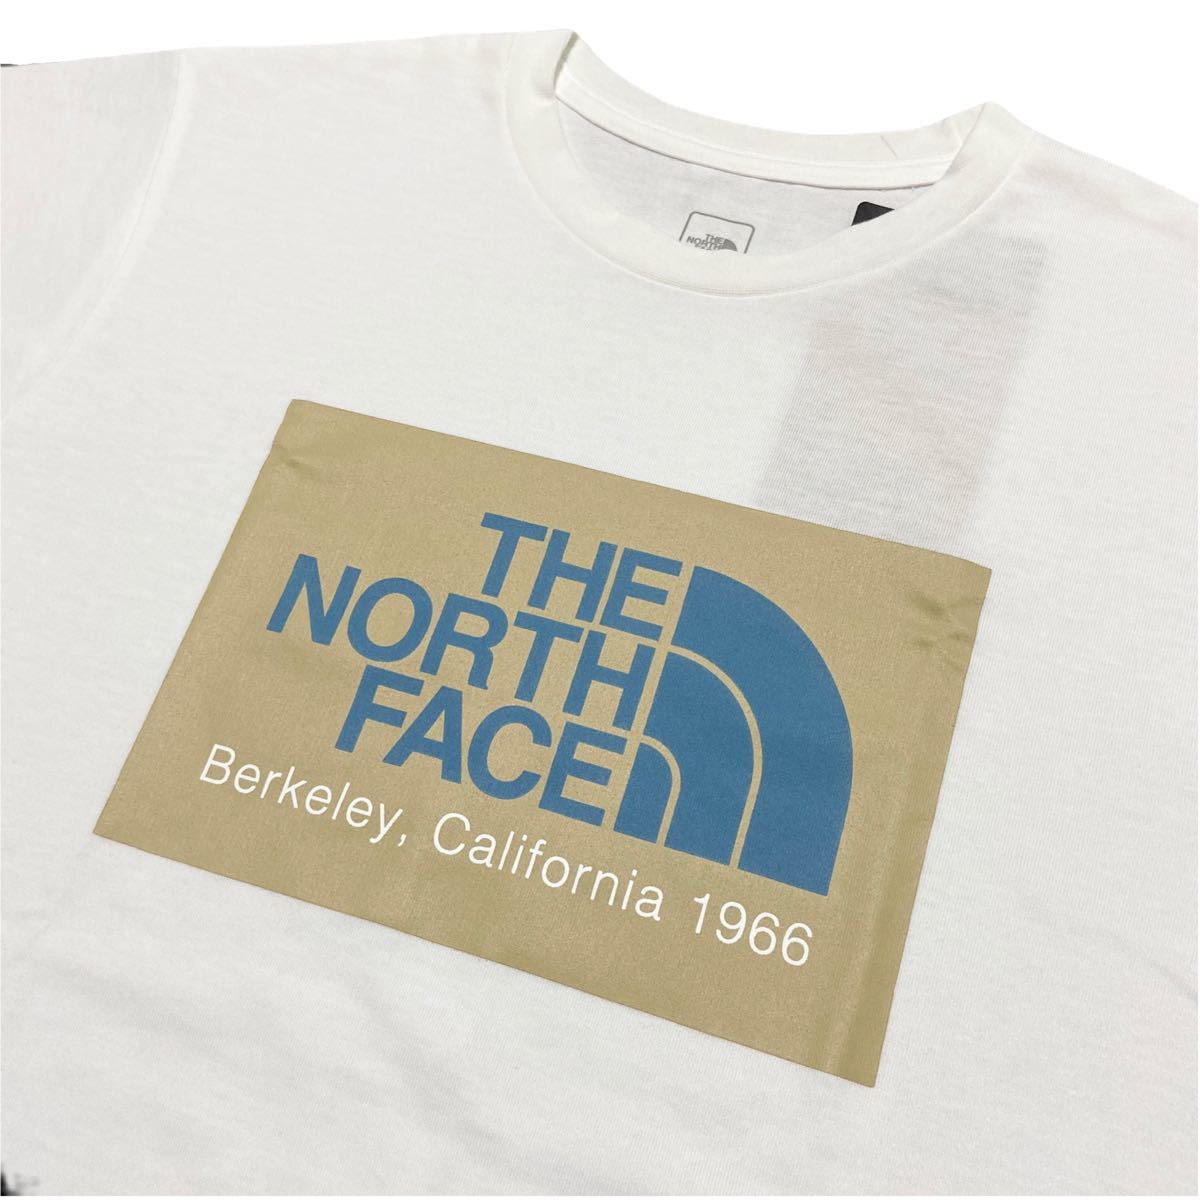 THE NORTH FACE ノースフェイス カリフォルニアロゴ Tシャツ